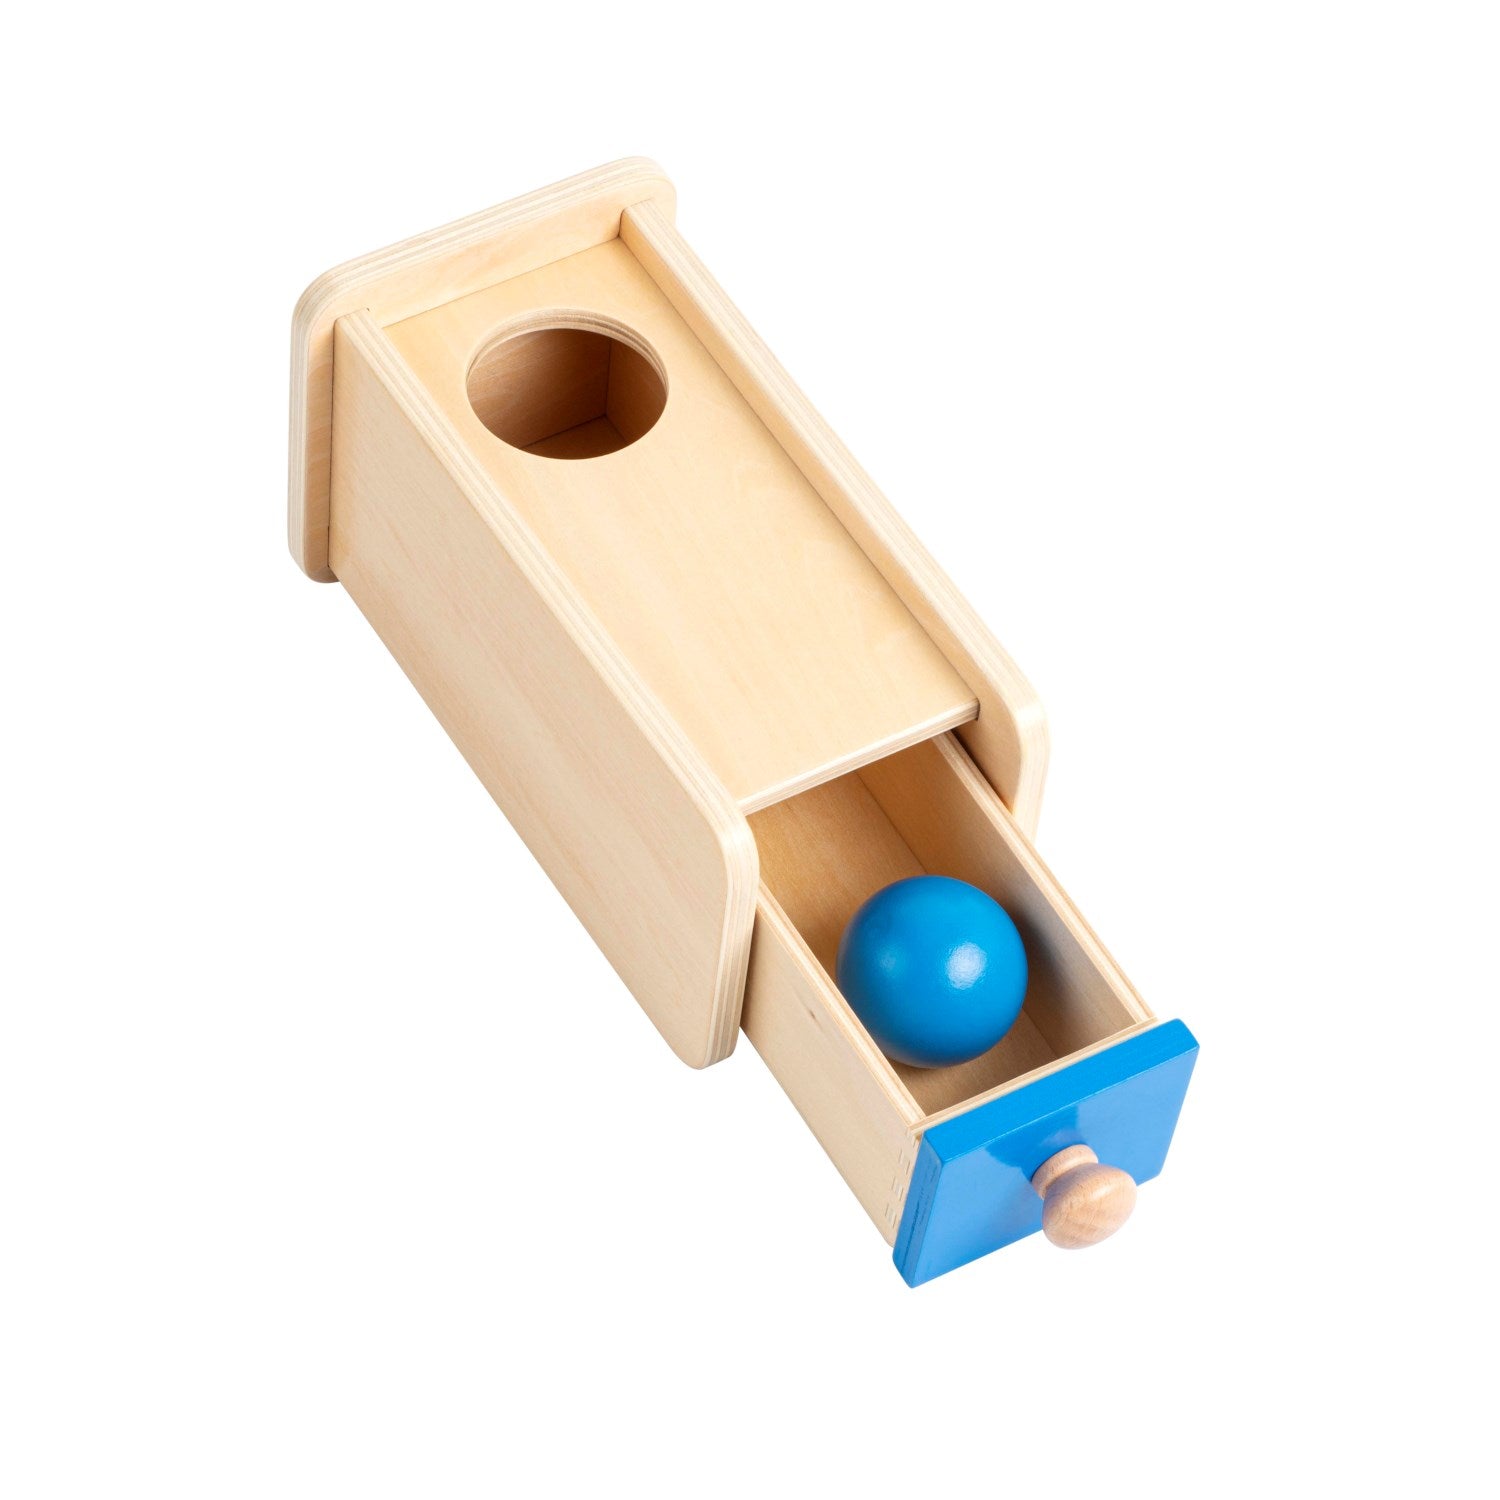 Drewniane pudełko z szufladką Montessori, wspierające rozwój umiejętności manualnych, koordynacji wzrokowo-ruchowej oraz zrozumienie relacji przyczynowo-skutkowych u dzieci.